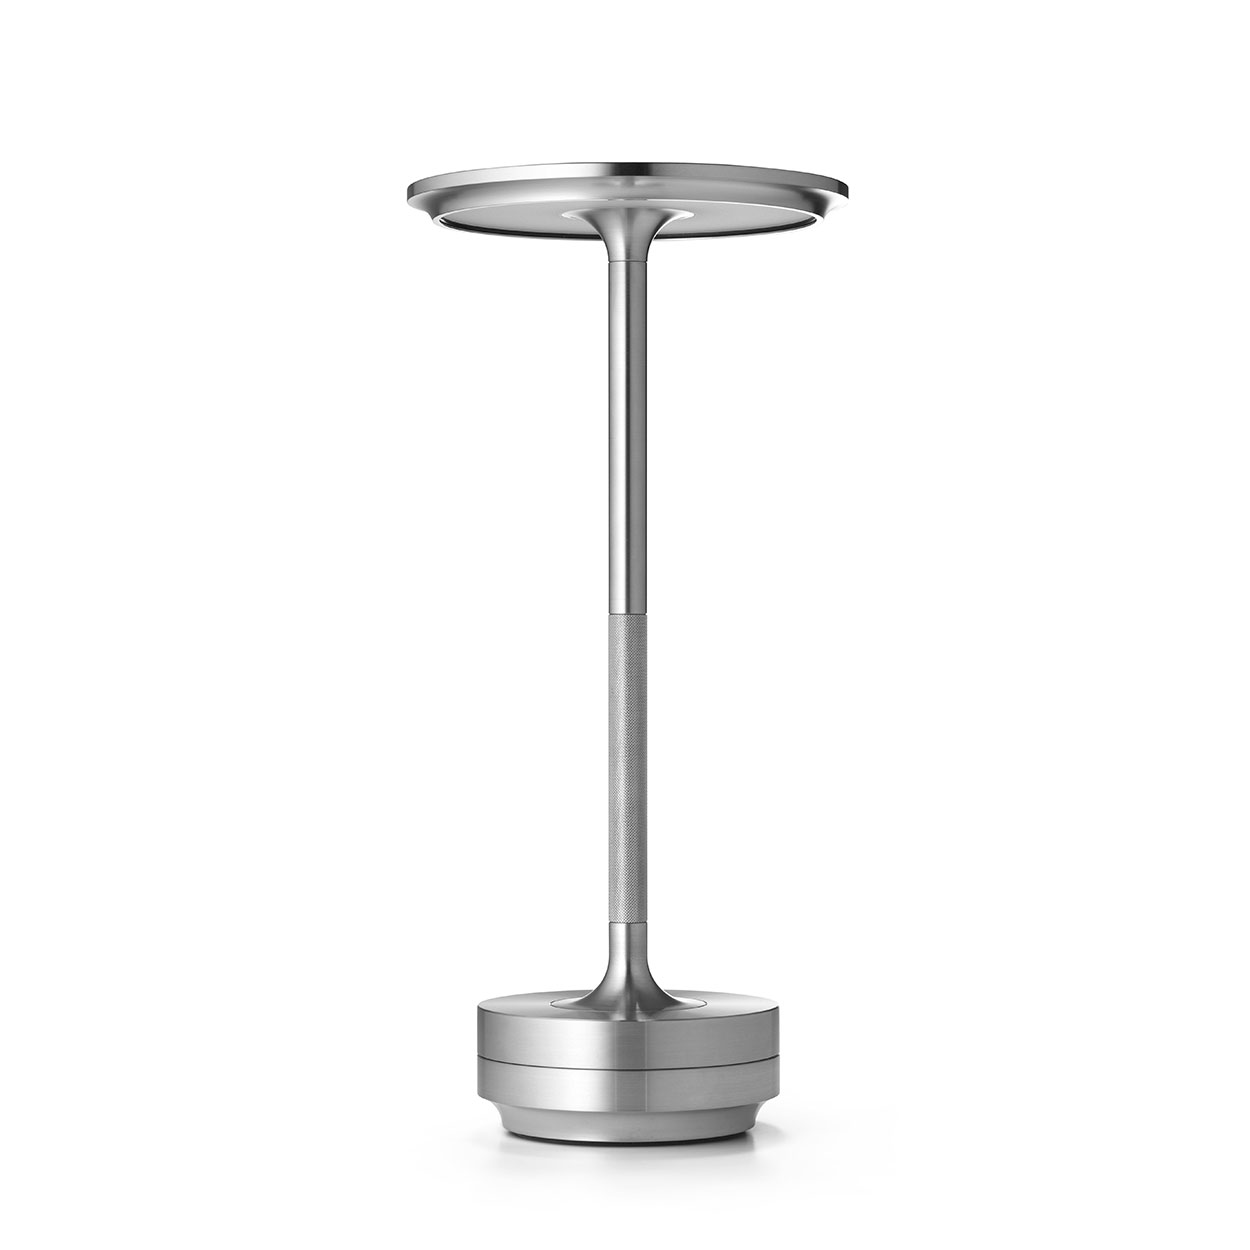 TURN bordslampa portabel, rostfritt stål